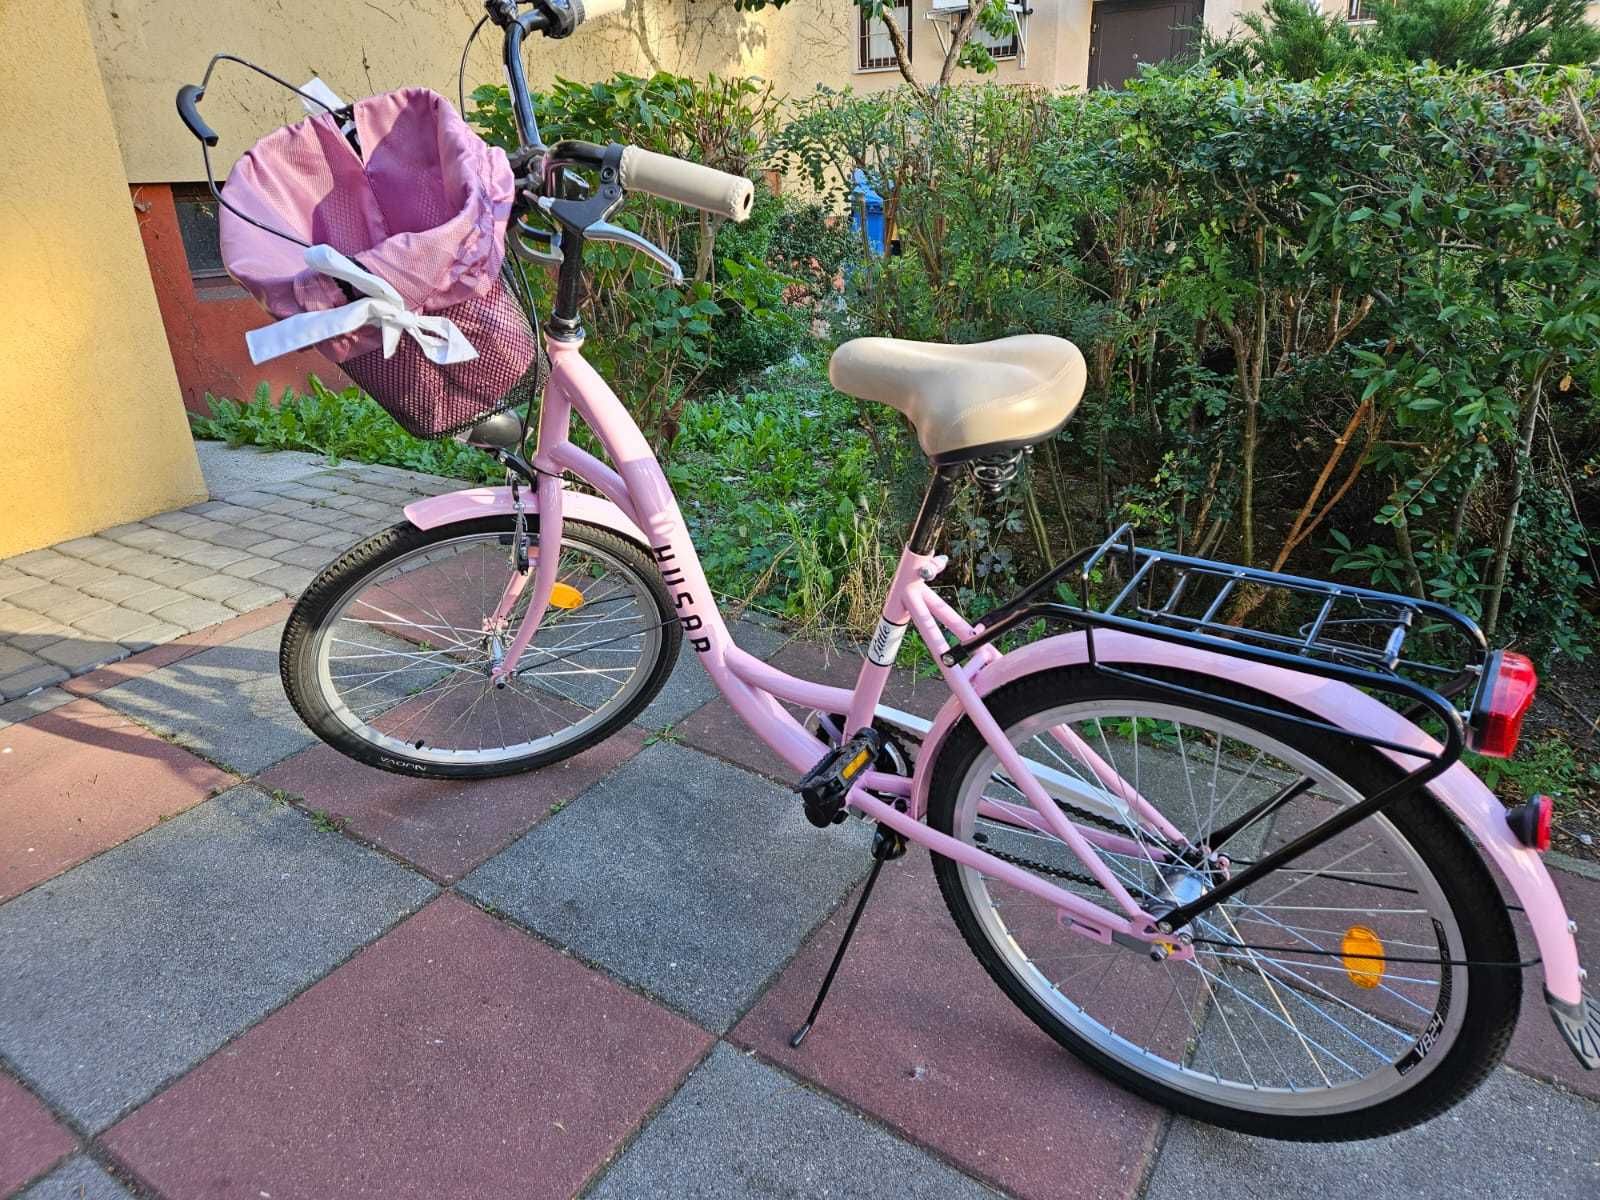 Sprzedam nowy rower Huzar w kolorze rozowym z koszymiem